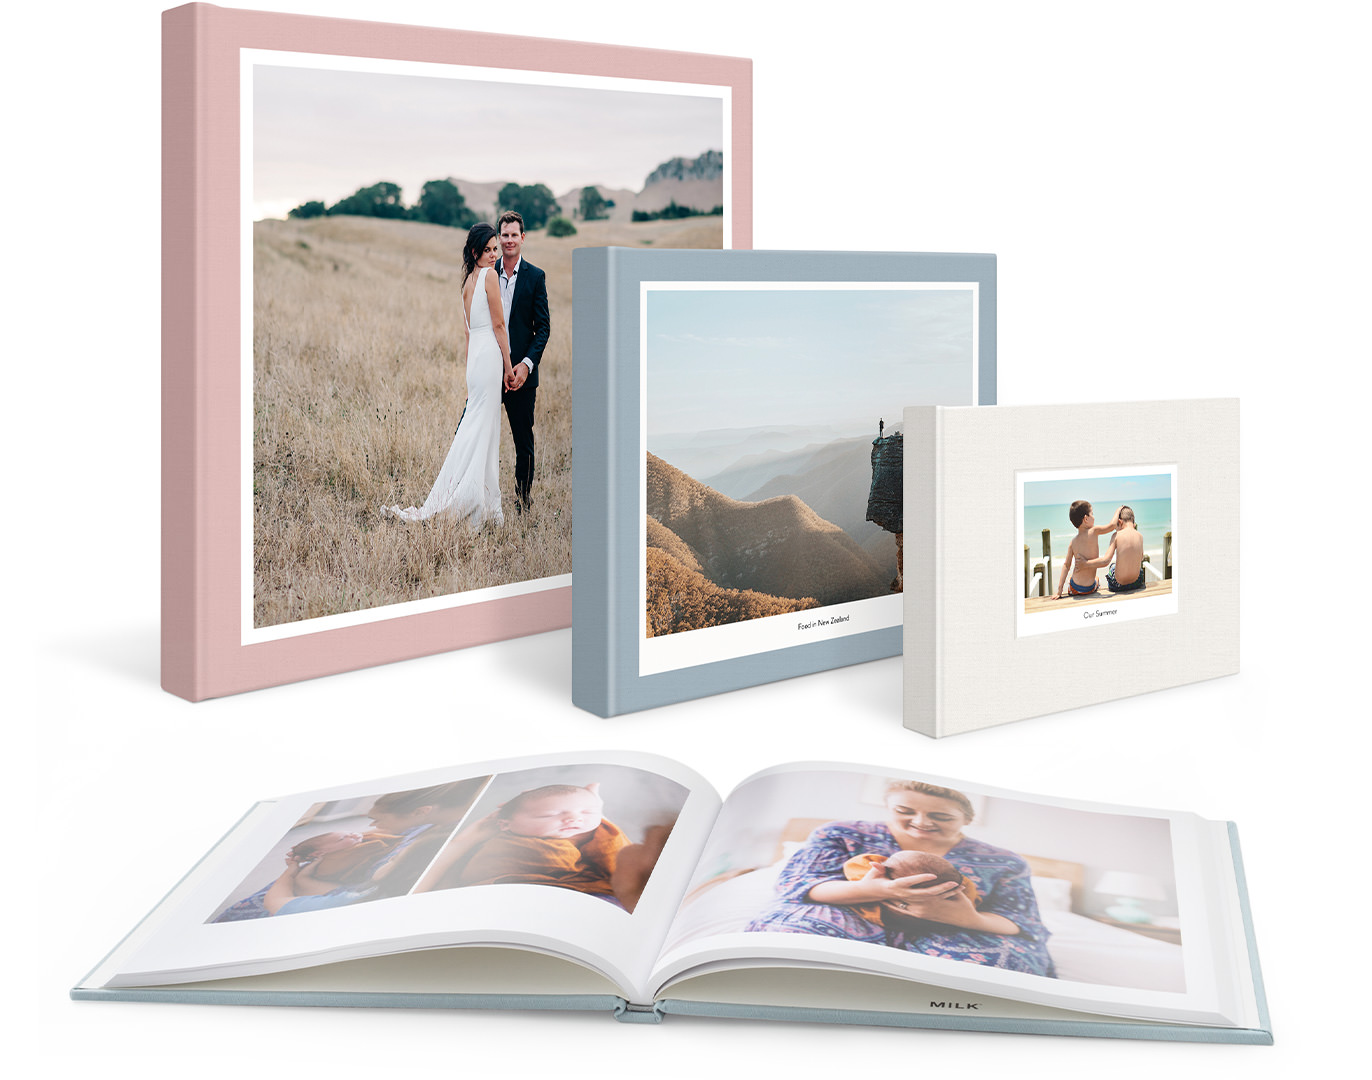 Vier klassische Fotobücher, ein Hochzeitsbuch, ein Reisebuch, ein Familienbuch und ein aufklappbares Buch für Babyfotos.